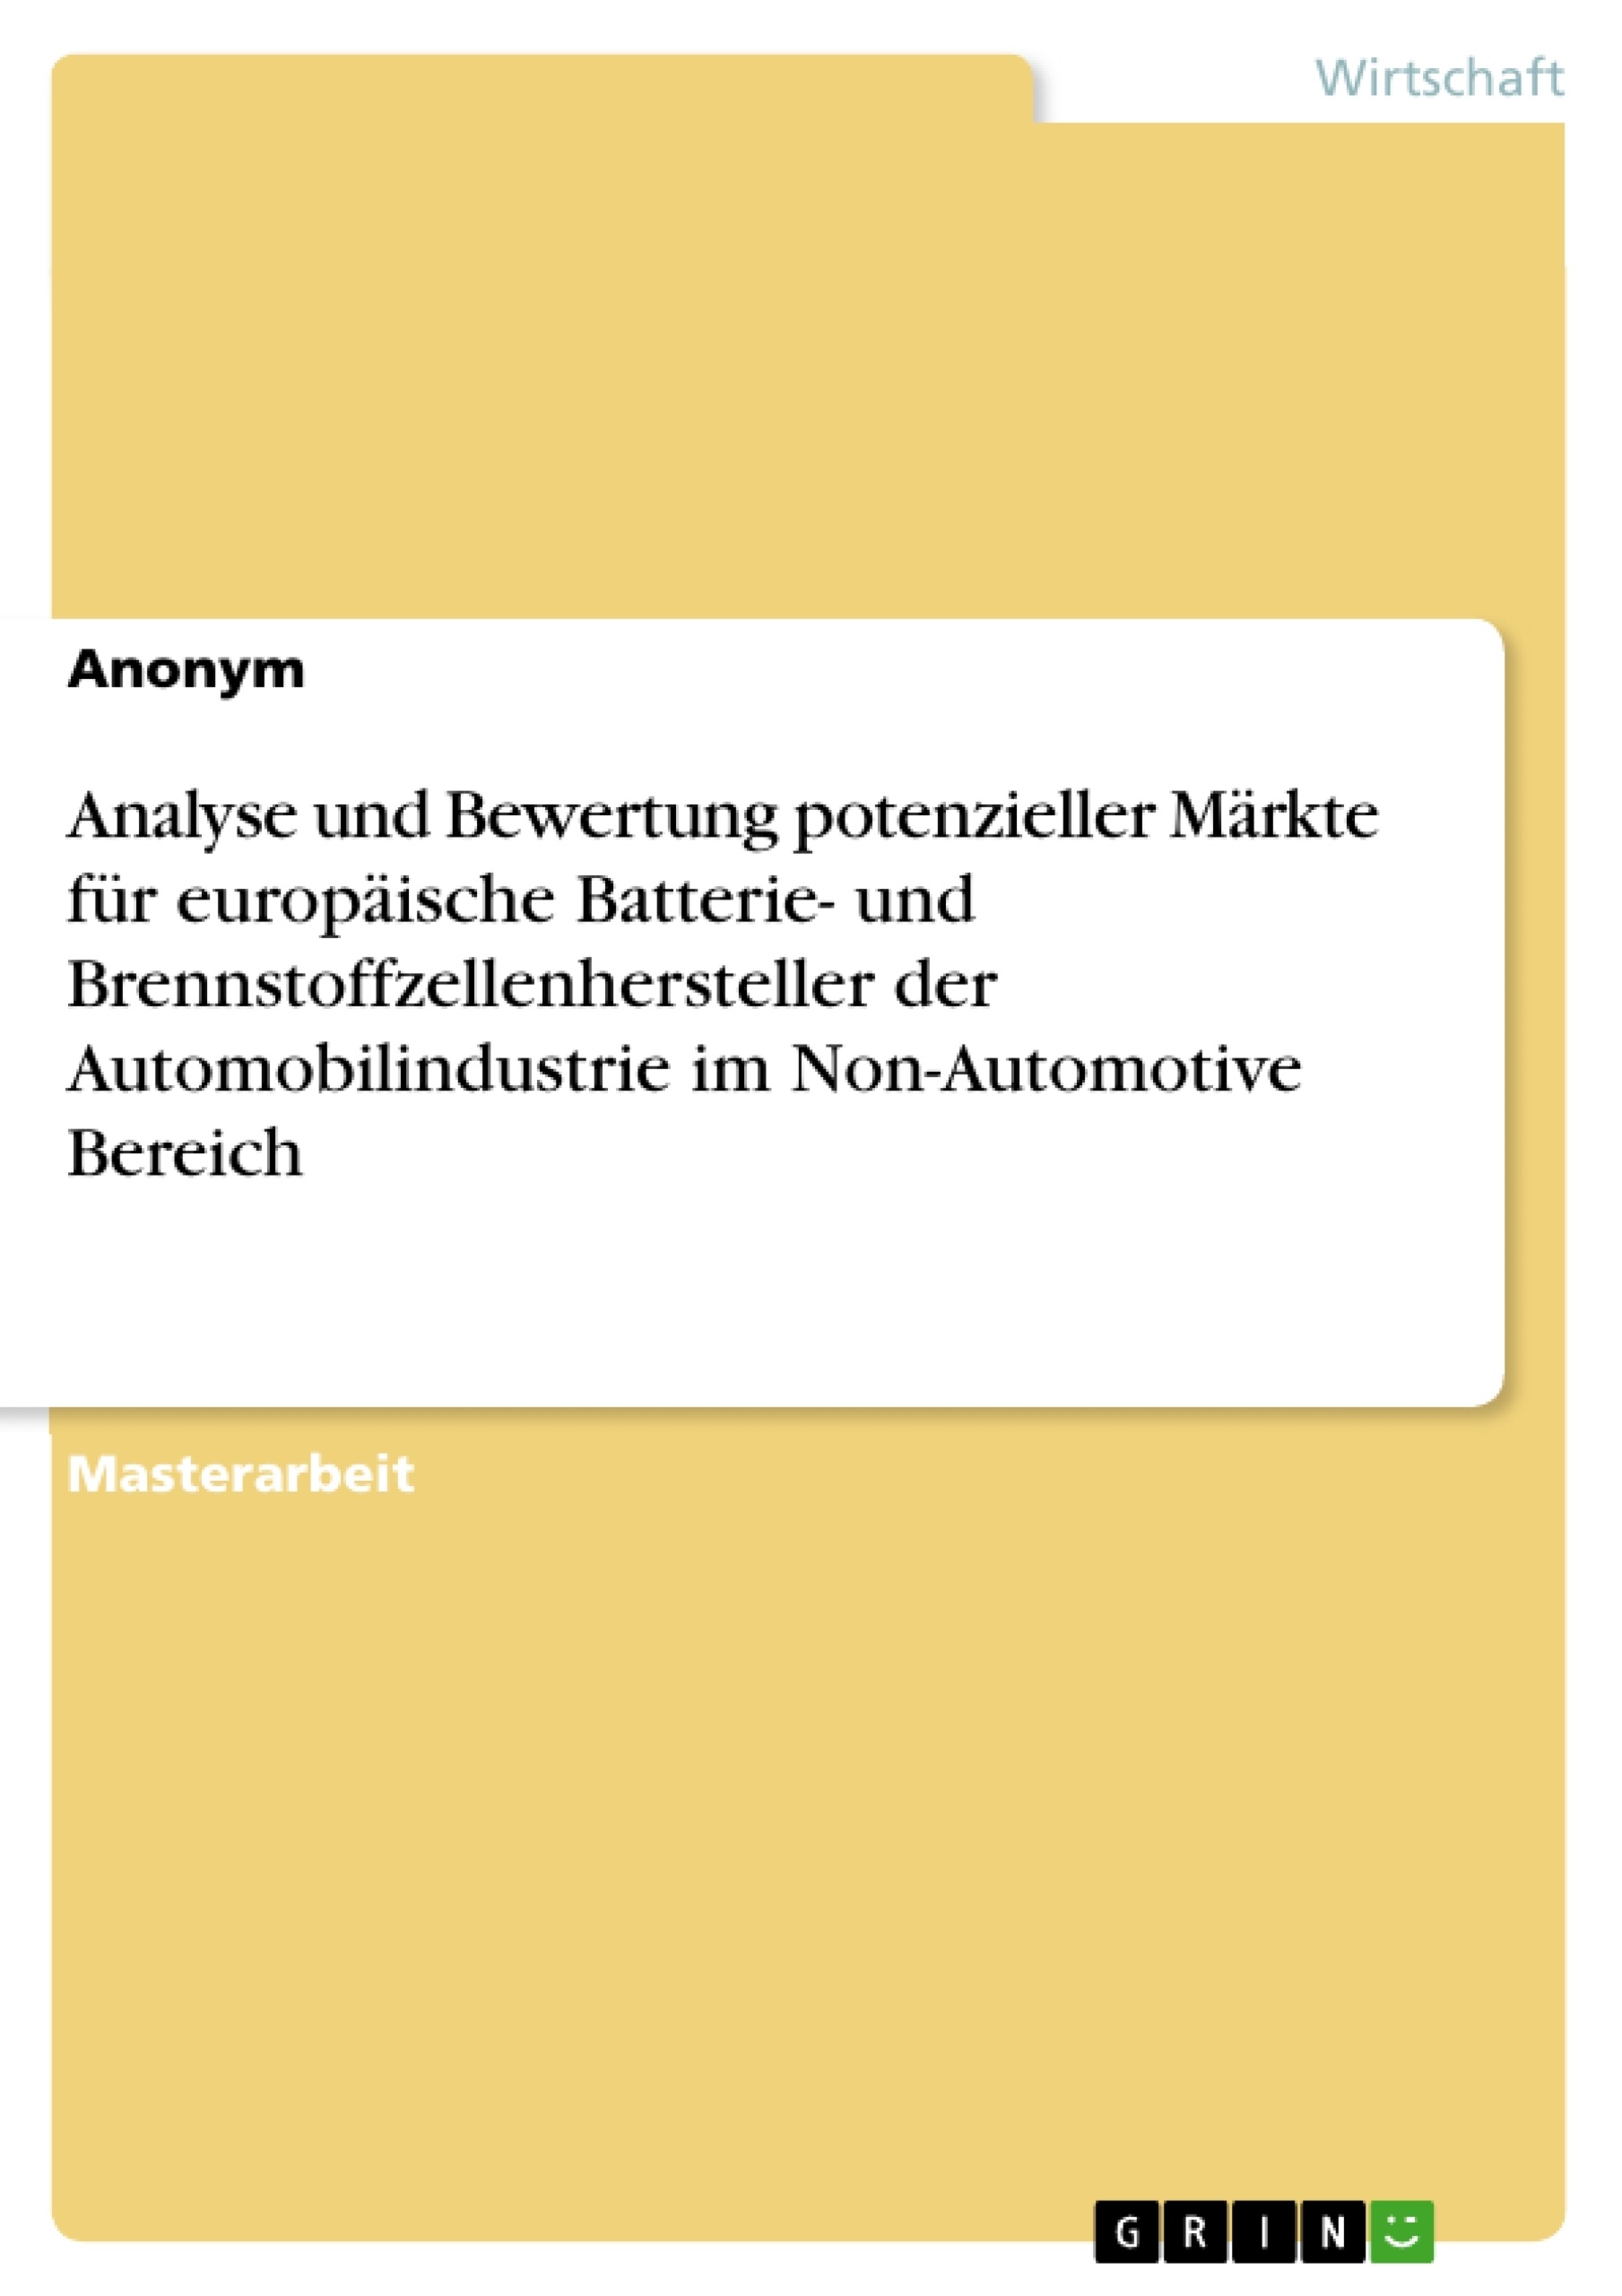 Title: Analyse und Bewertung potenzieller Märkte für europäische Batterie- und Brennstoffzellenhersteller der Automobilindustrie im Non-Automotive Bereich